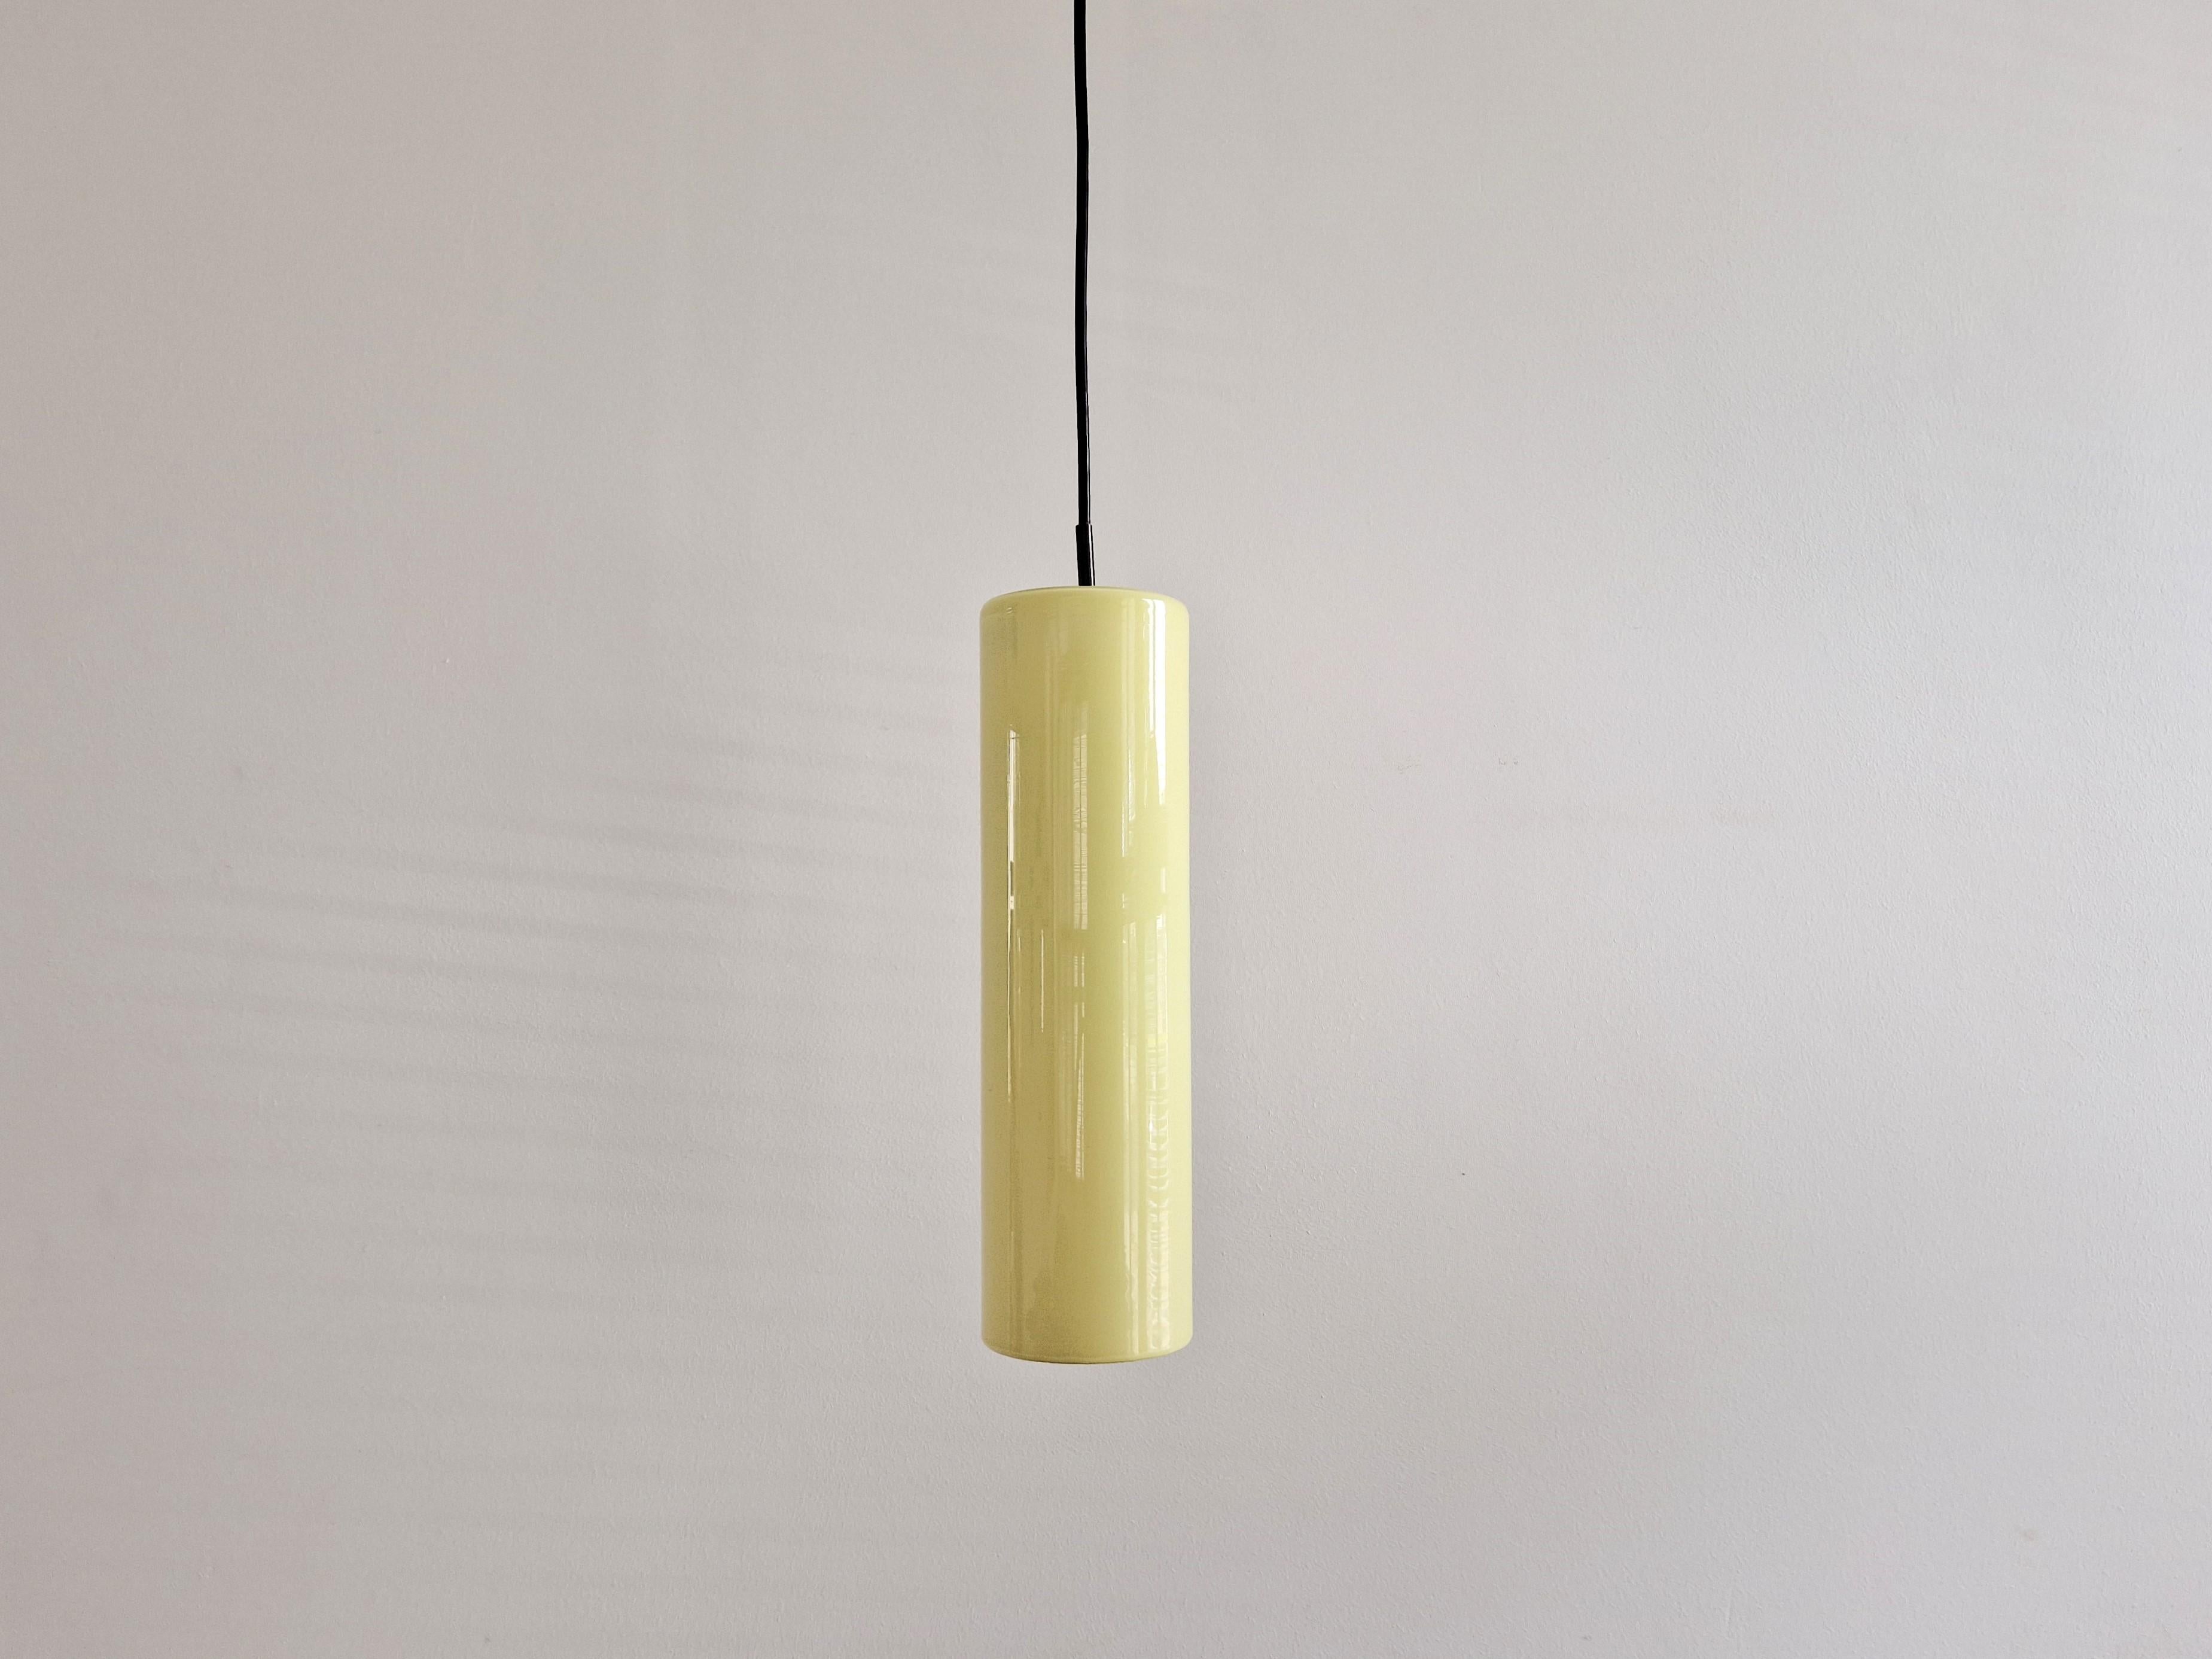 Cette lampe suspendue cylindrique en verre jaune a été conçue par Massimo Vignelli pour Venini dans les années 1960. Il a été fabriqué en 2 tailles avec une hauteur de 30 cm et 40 cm. Cette lampe est la version la plus grande et la plus rare. Elle